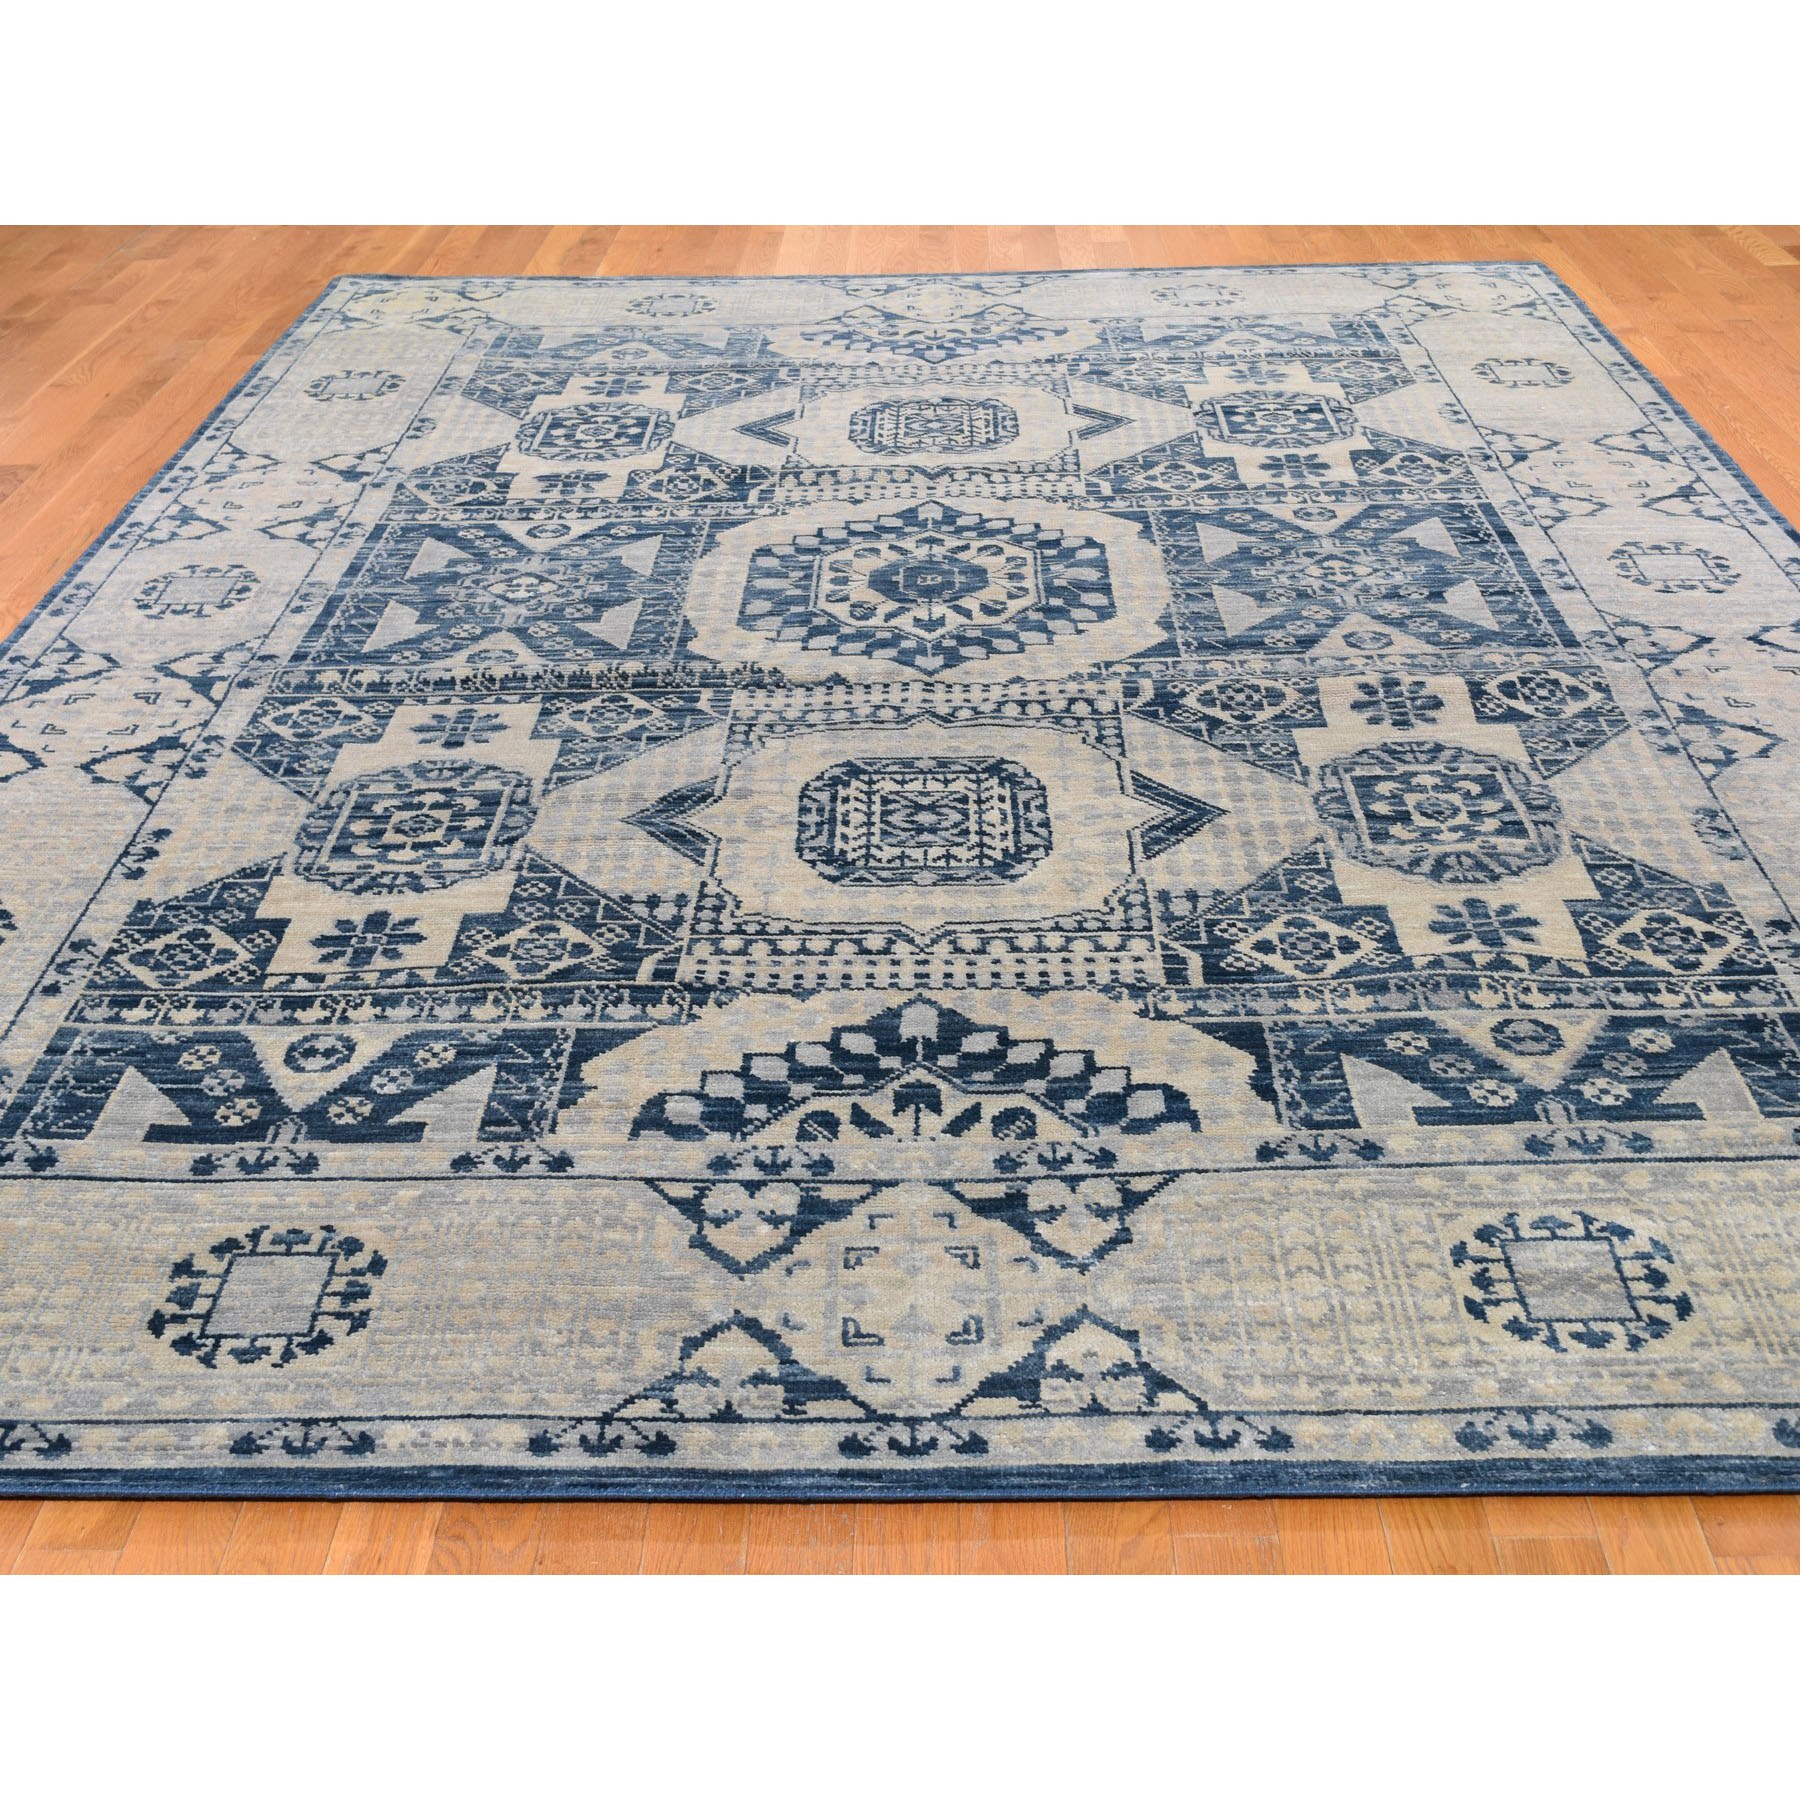 9-1 x12- Blue Mamluk Design Veg Dyes Hand Spun New Zealand Wool Oriental Rug 